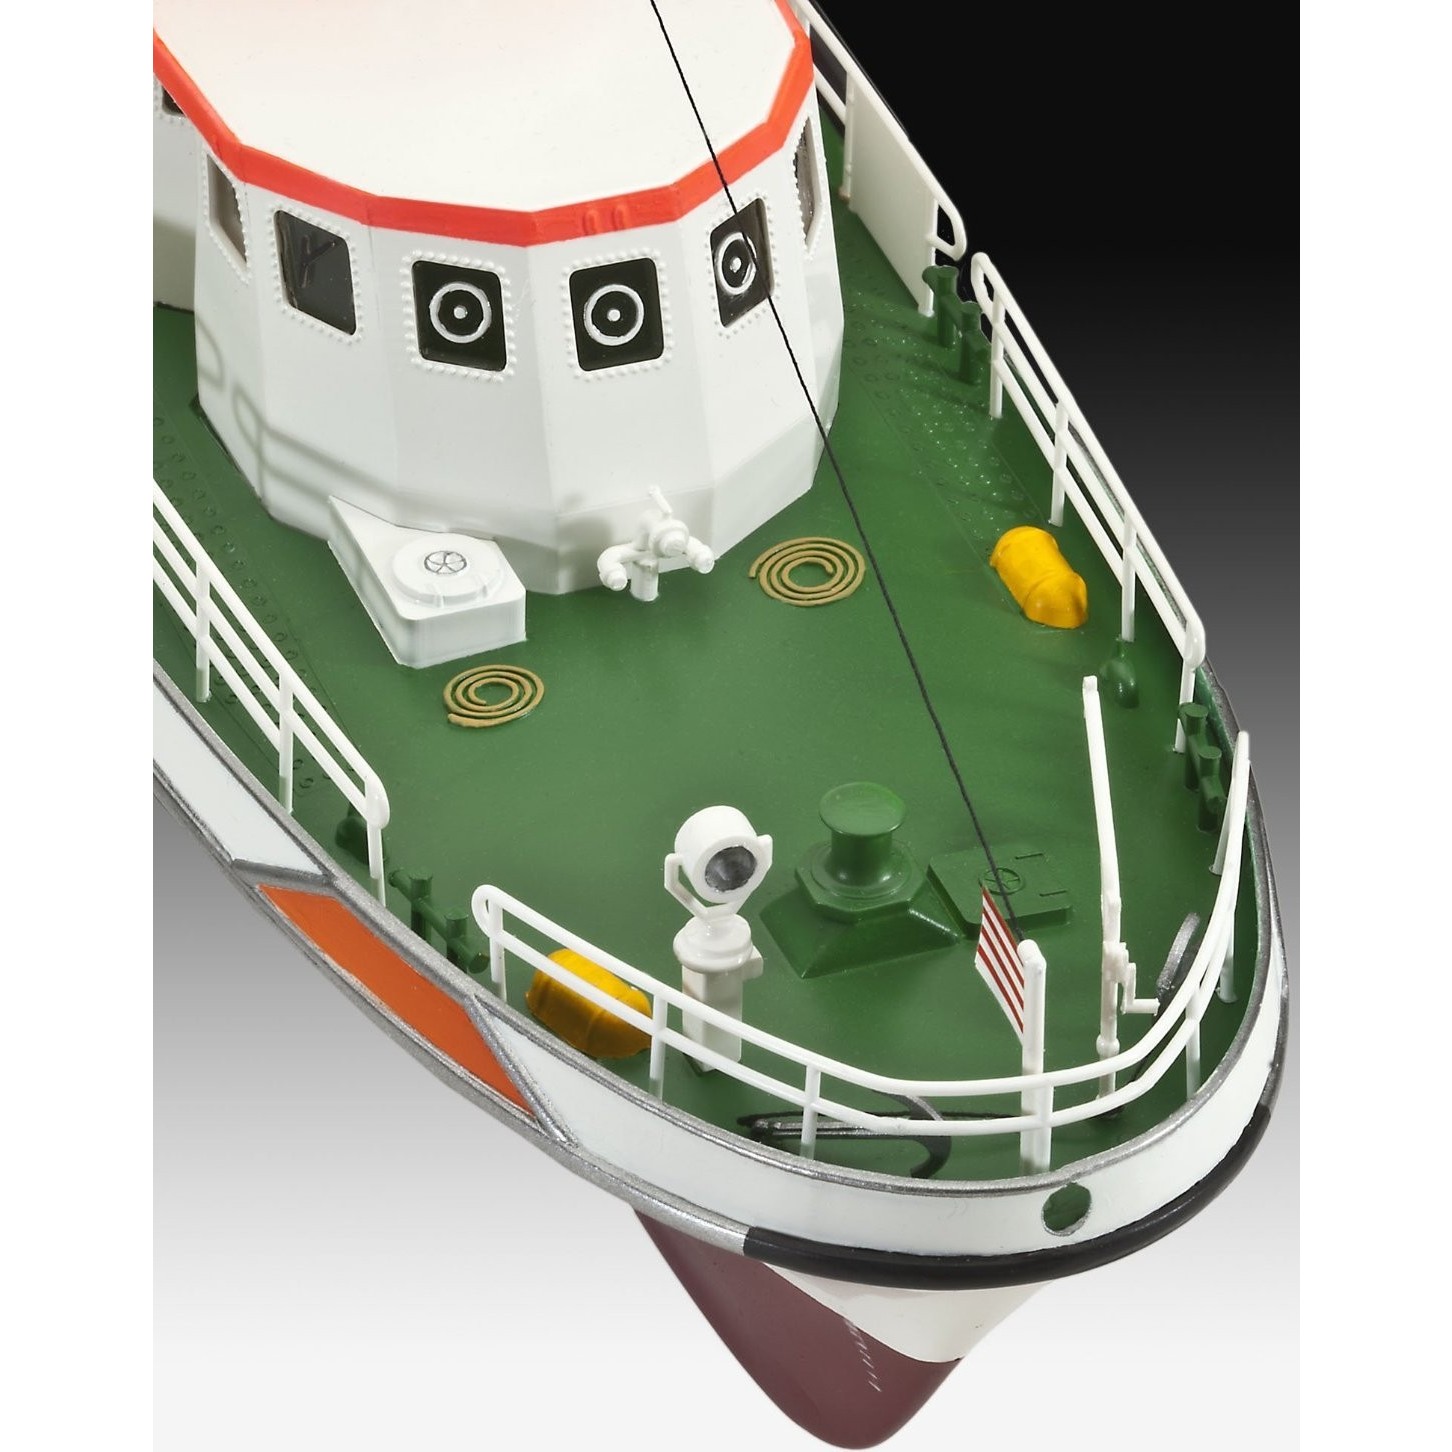 Сборная модель Revell Search and Rescue Vessel Berlin (1:72)